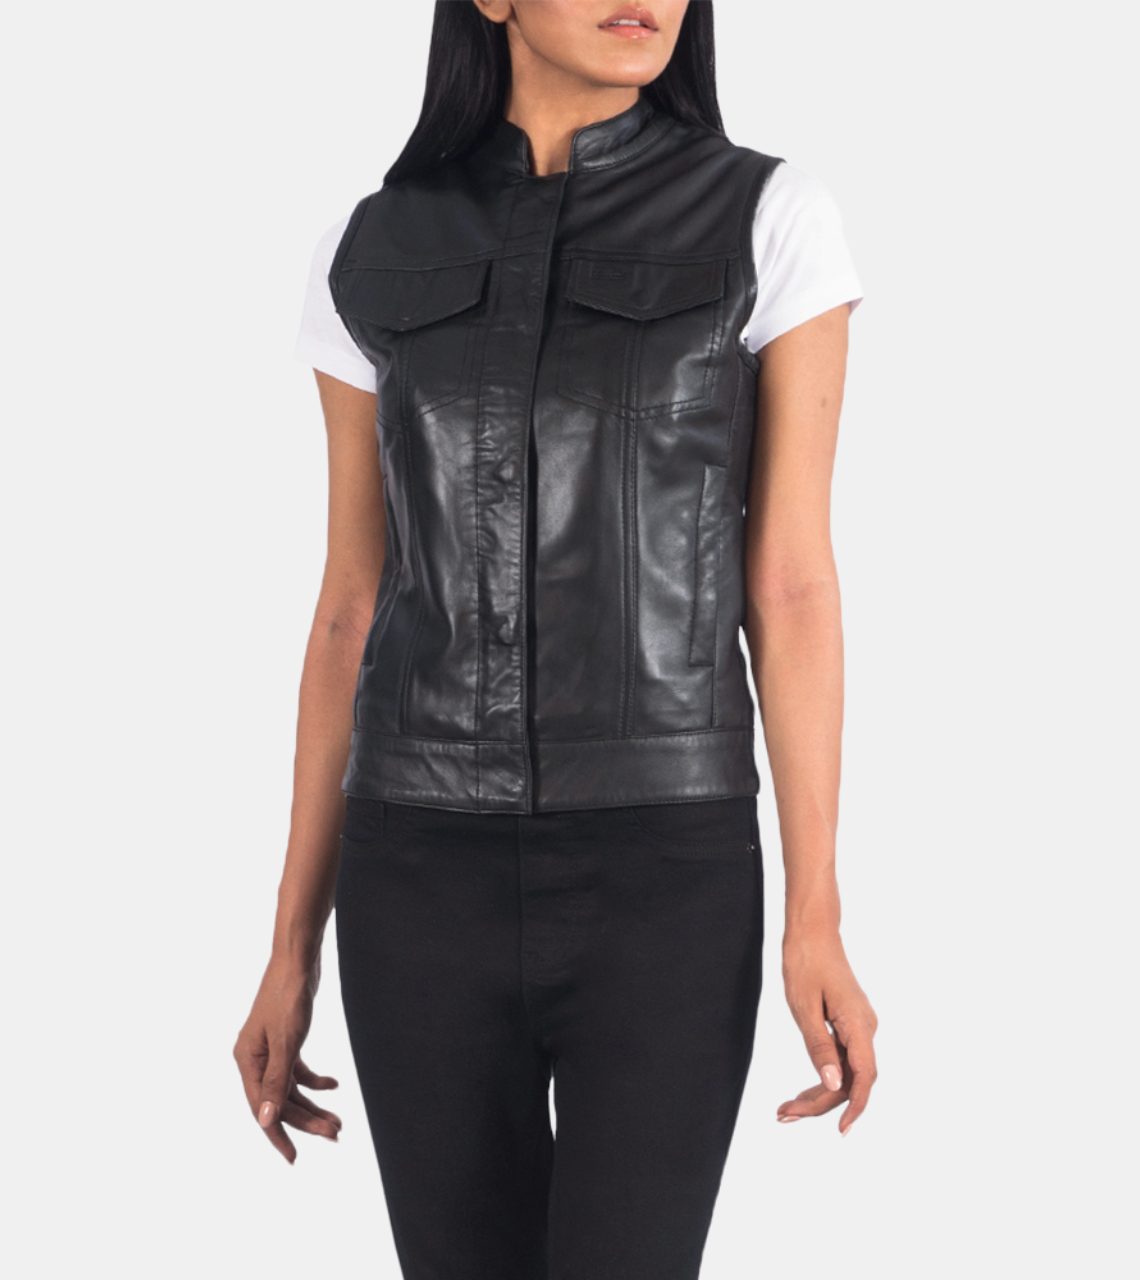 Arihemis Black Leather Vest For Women's